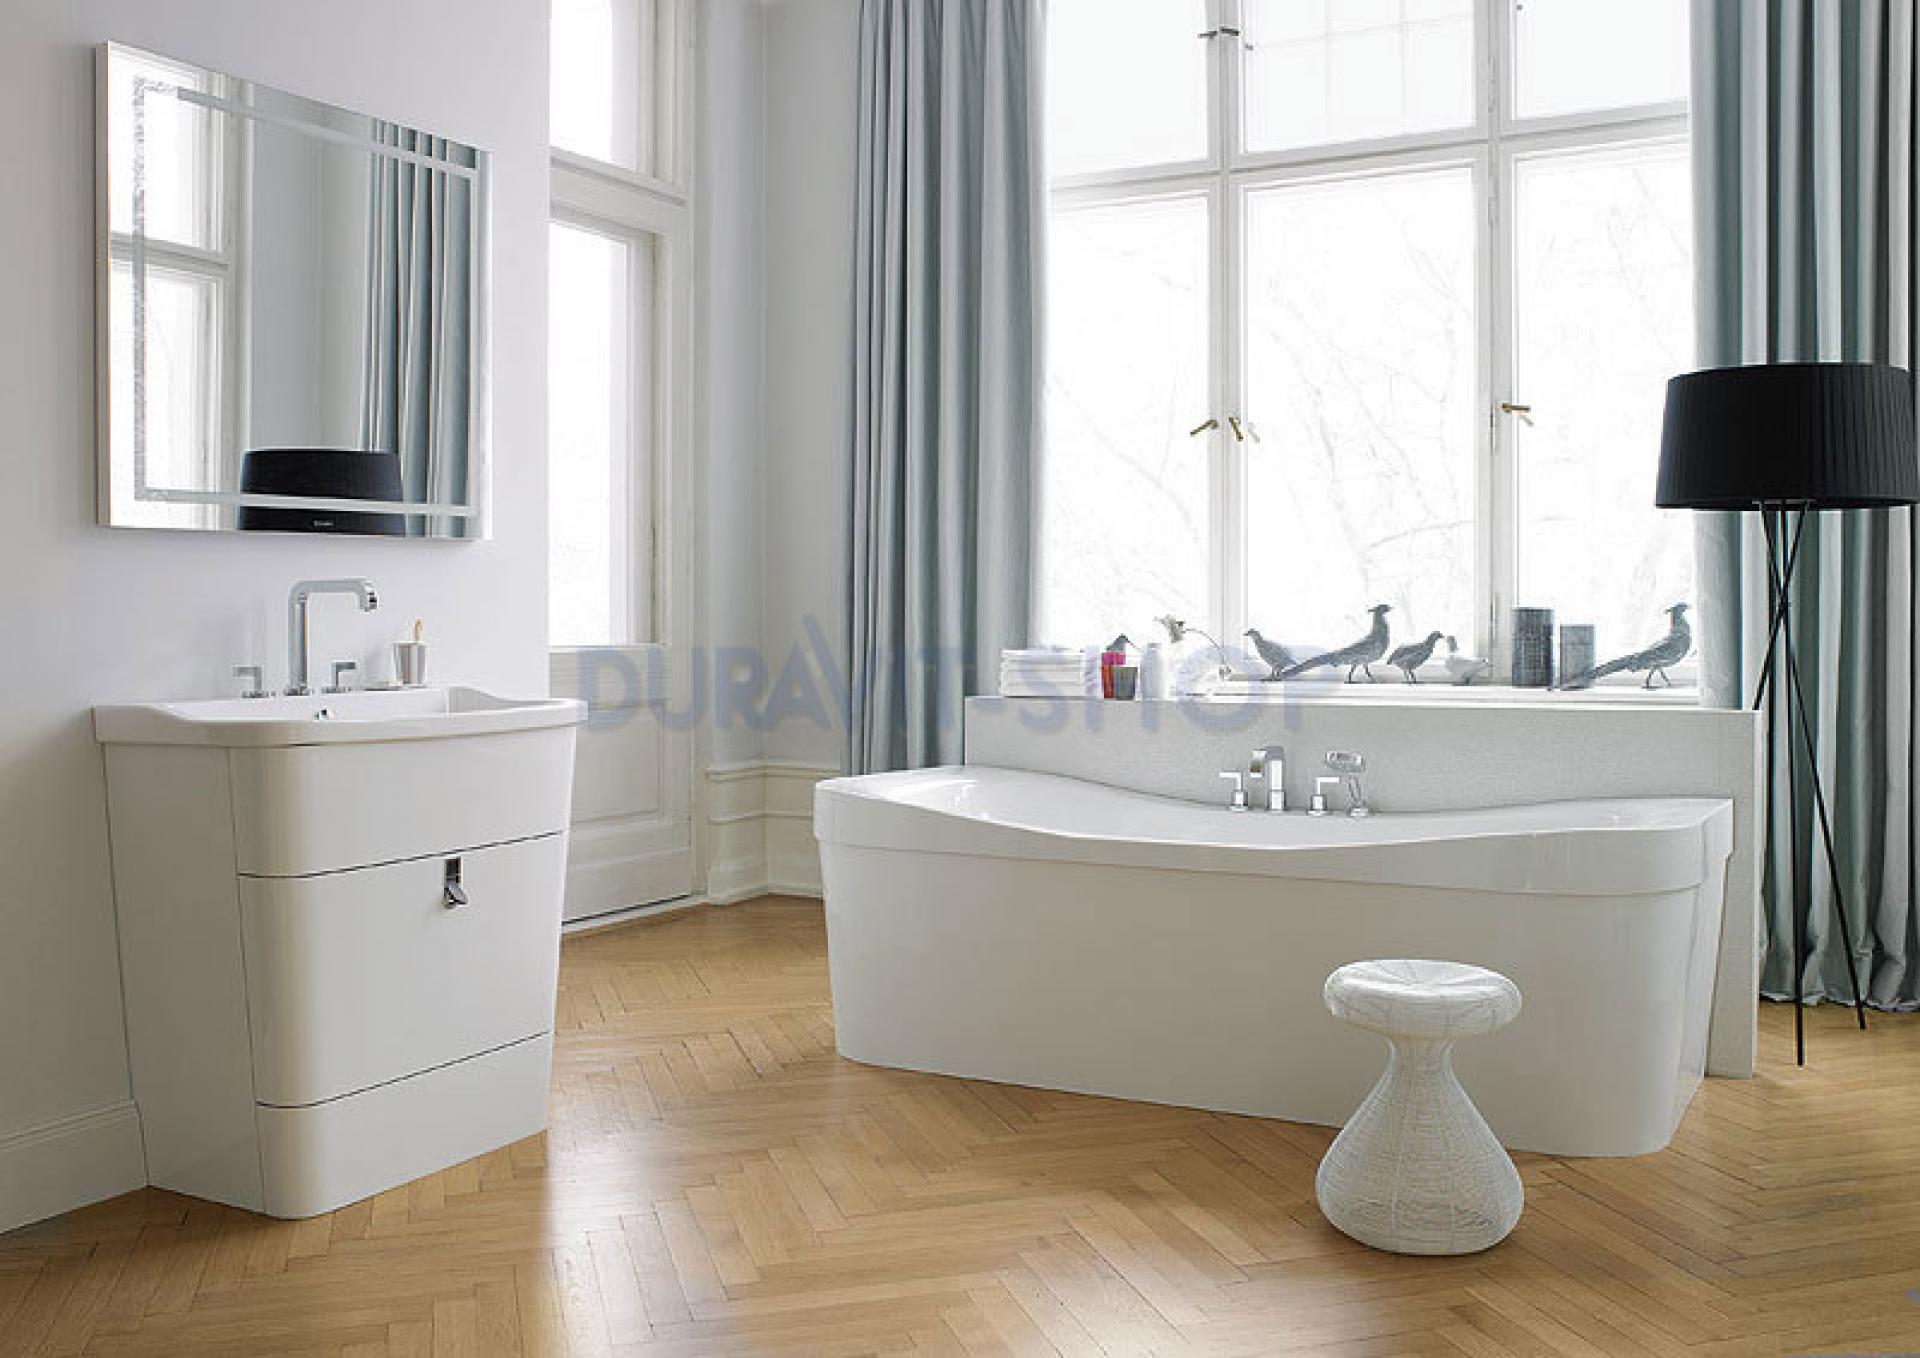 Зеркало с подсветкой 100х90 (белый лак) Duravit Esplanade ES909105656 - duravit shop